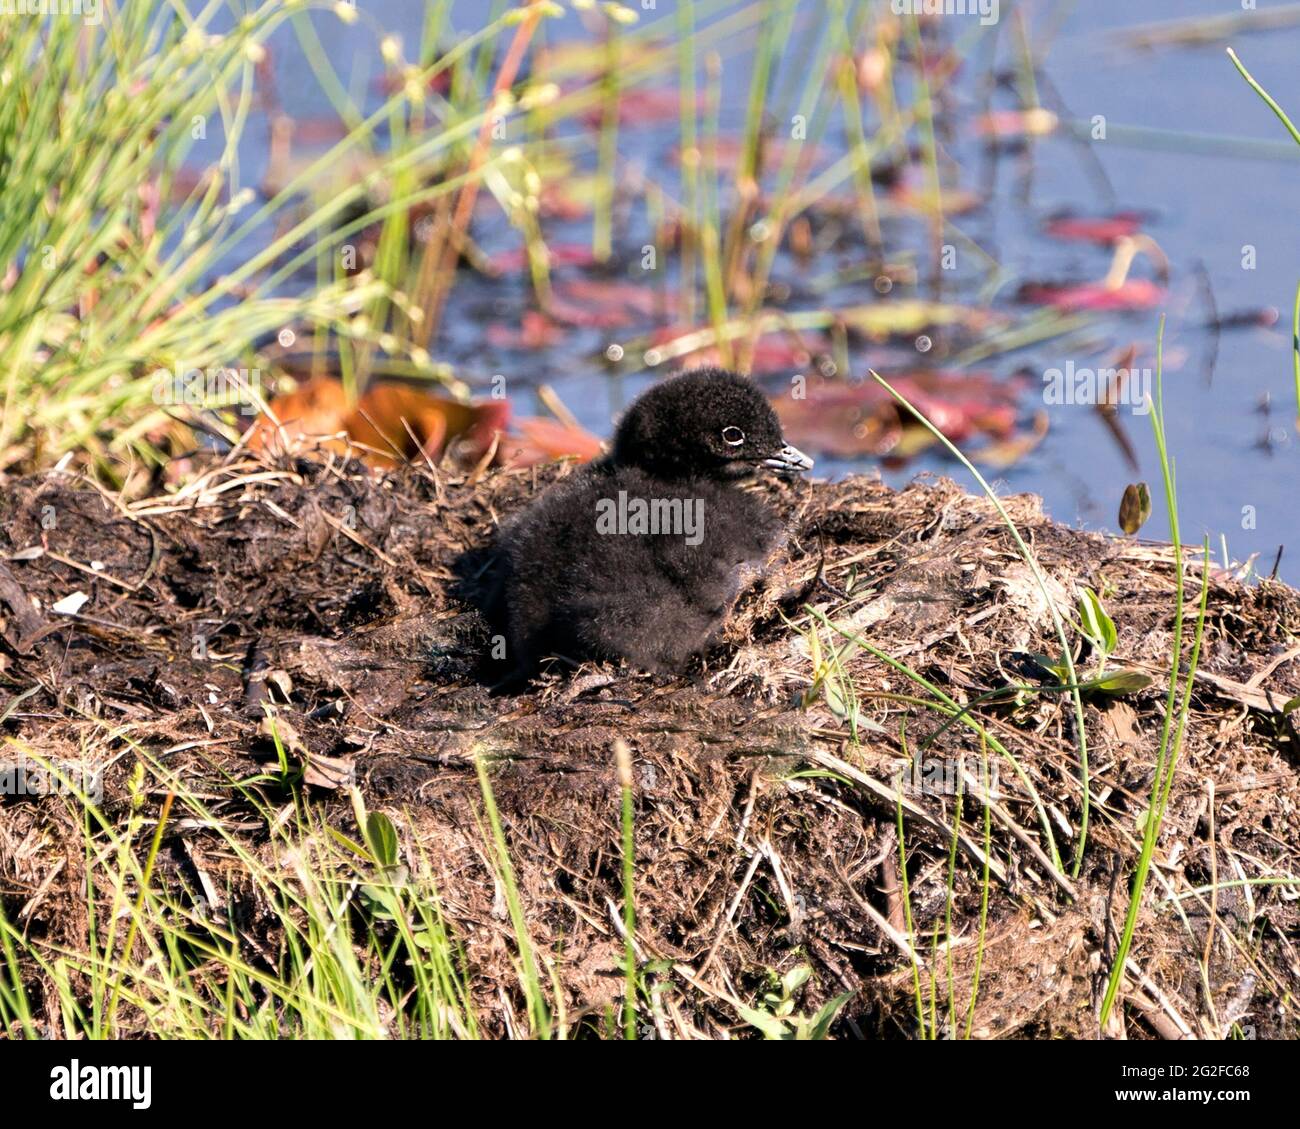 Bébé de Loon commun poussin sur le nid environ quelques heures après l'éclosion, montrant des plumes de duvet molletonné brun dans son environnement et son habitat de marais humide. Banque D'Images